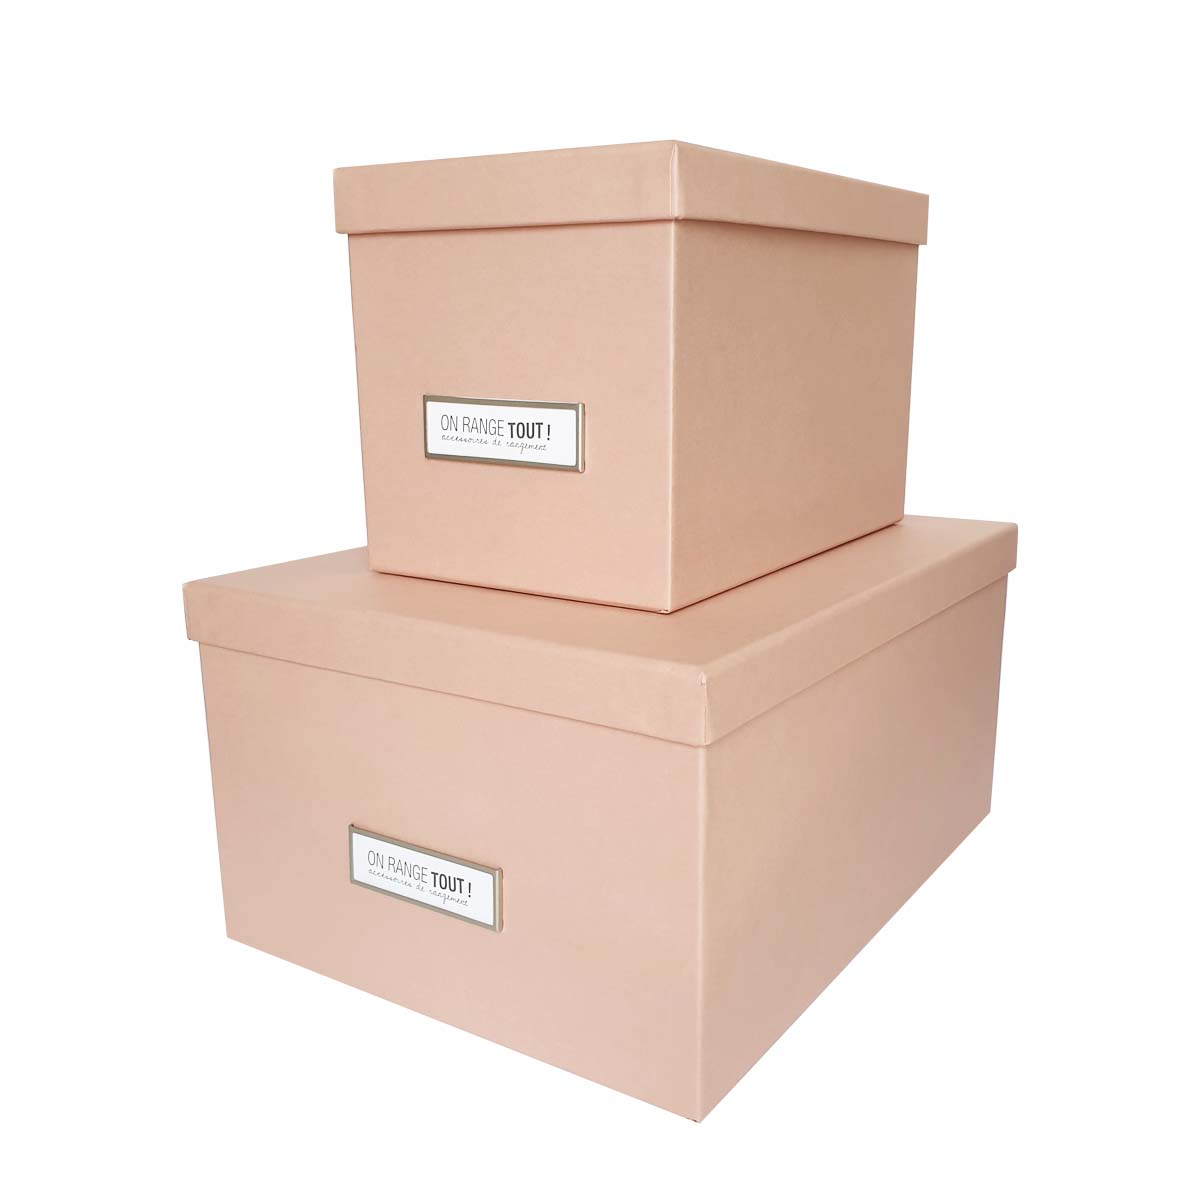 Boîte de rangement en carton rose saumon grand modèle